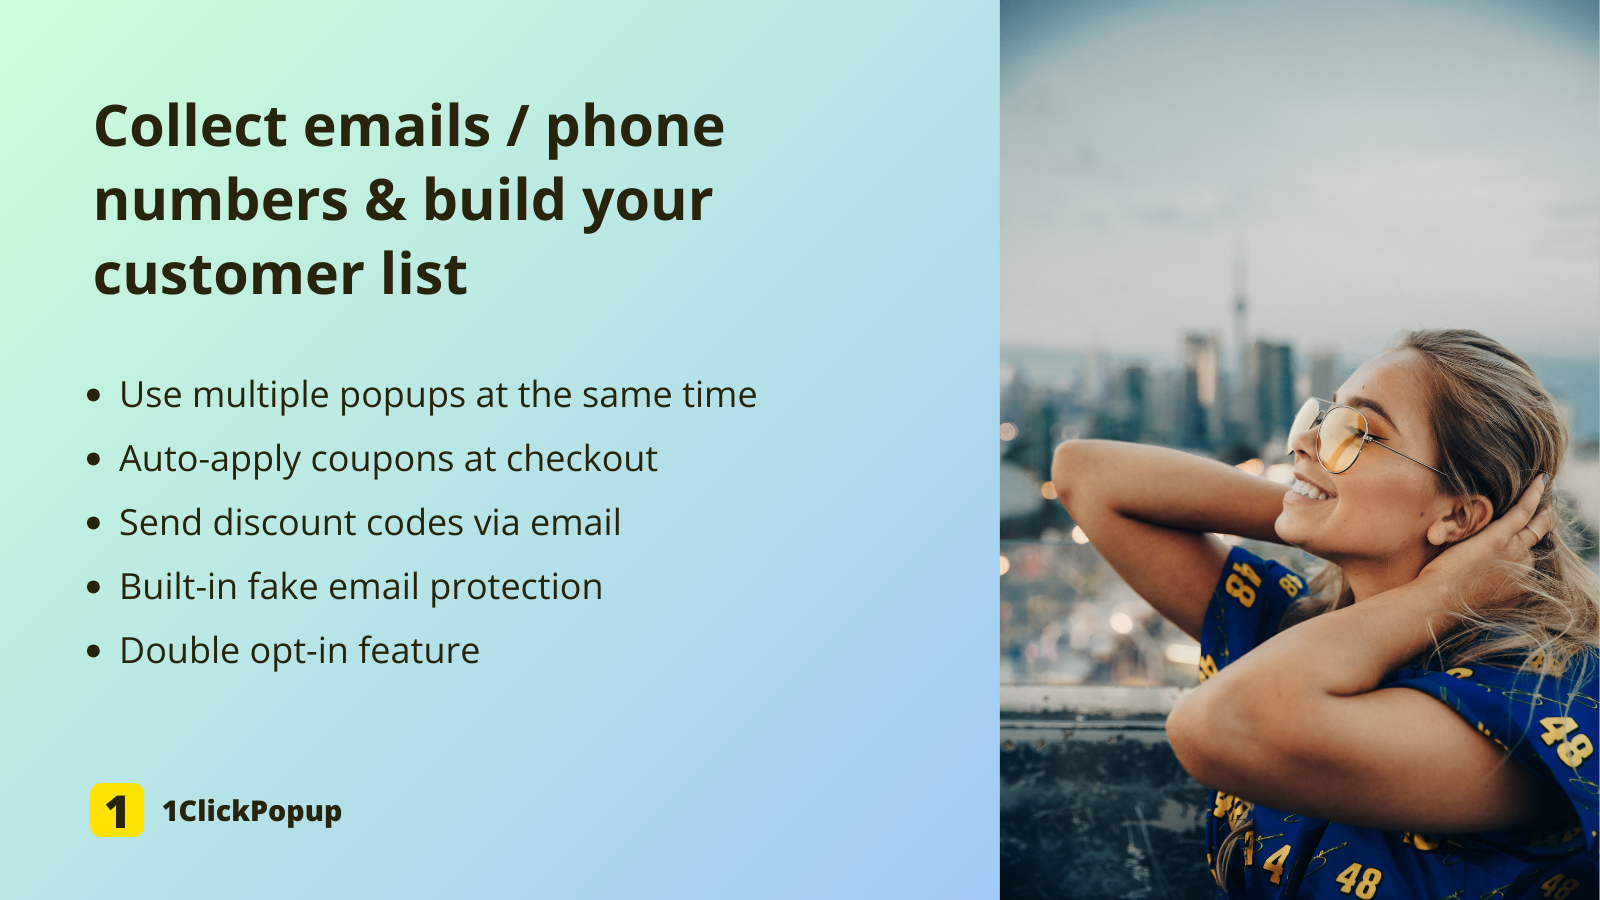 收集电子邮件/电话号码并建立您的客户列表